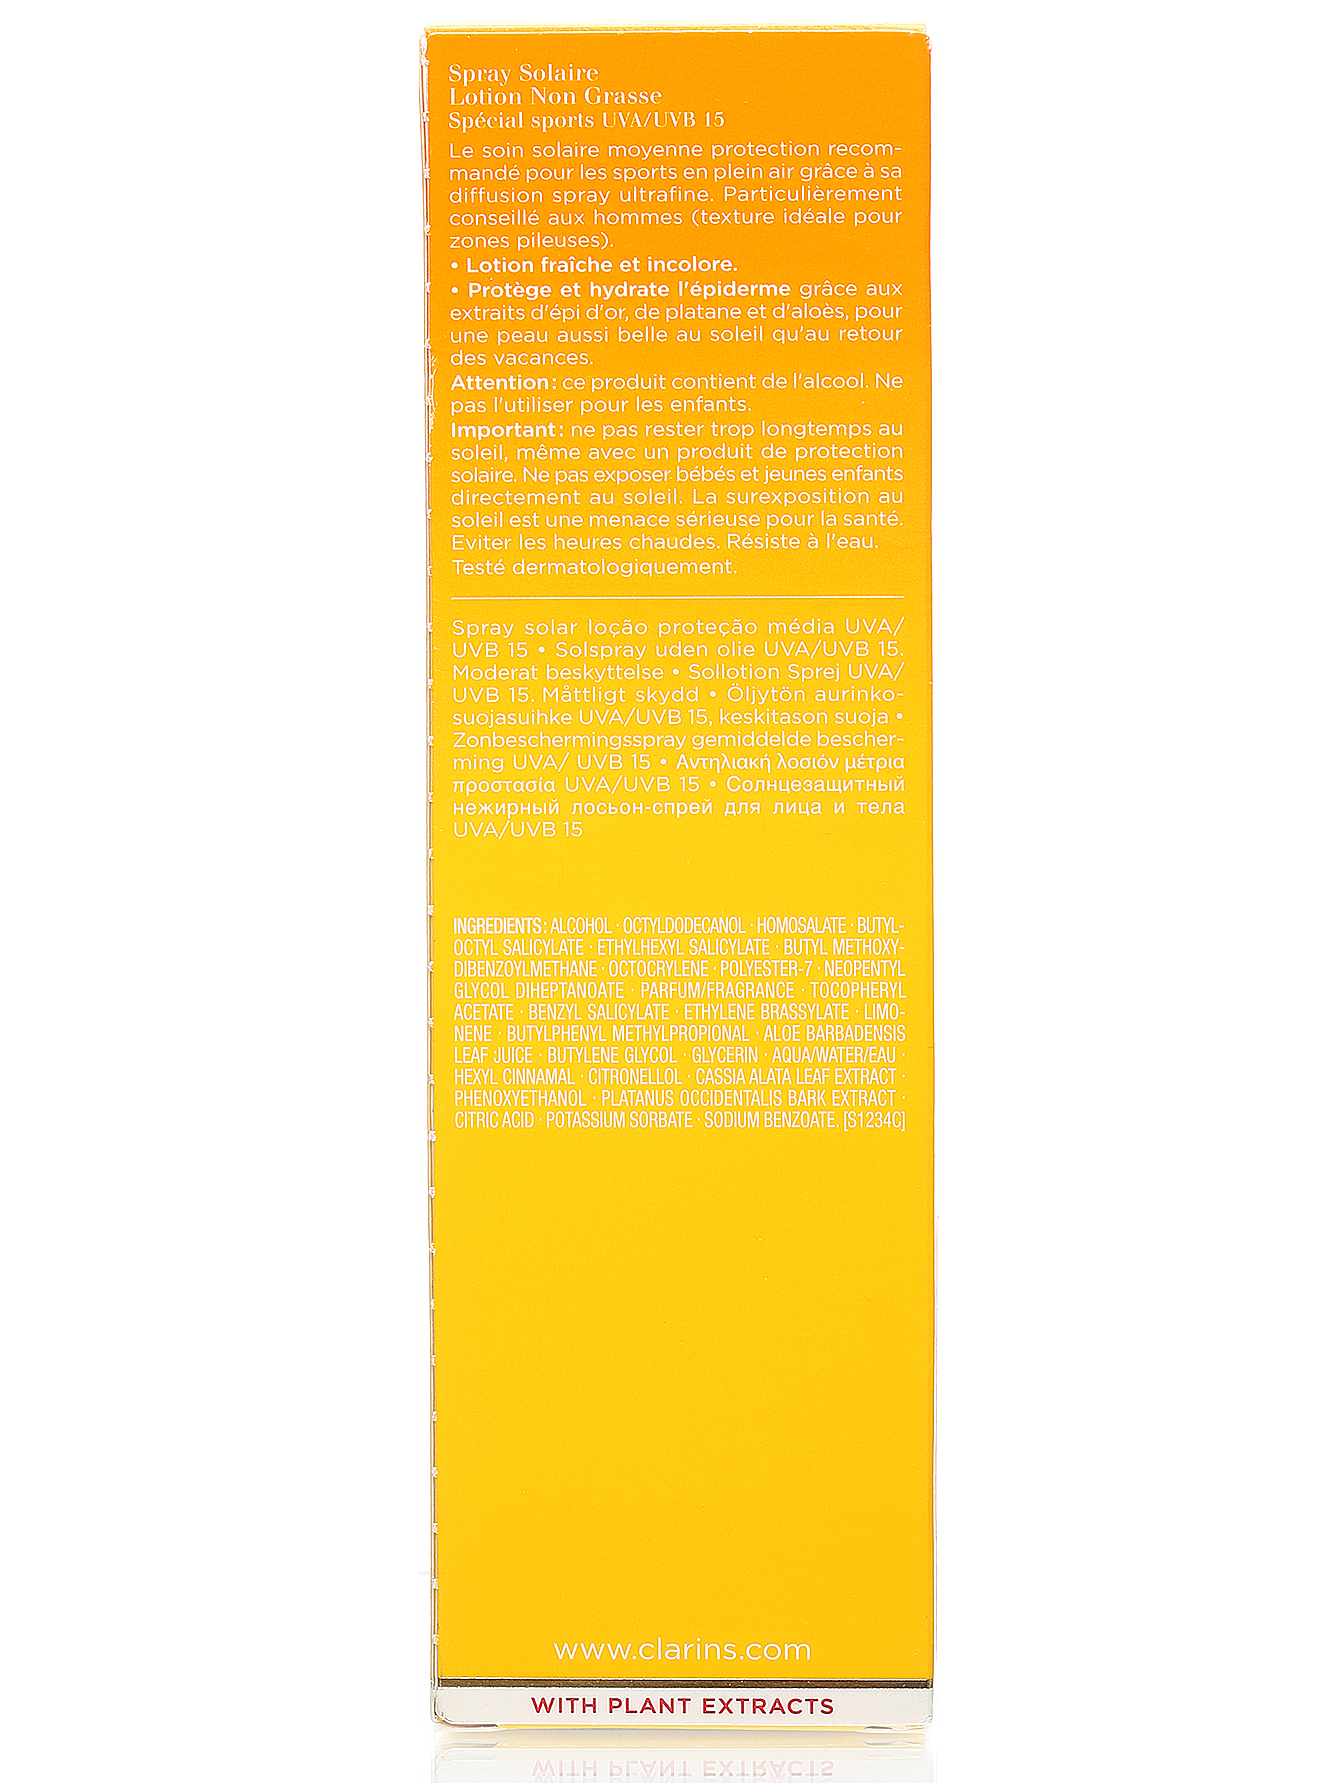 Солнцезащитный лосьон-спрей UVA-UVB15 - Sun Care, 150ml - Модель Верх-Низ